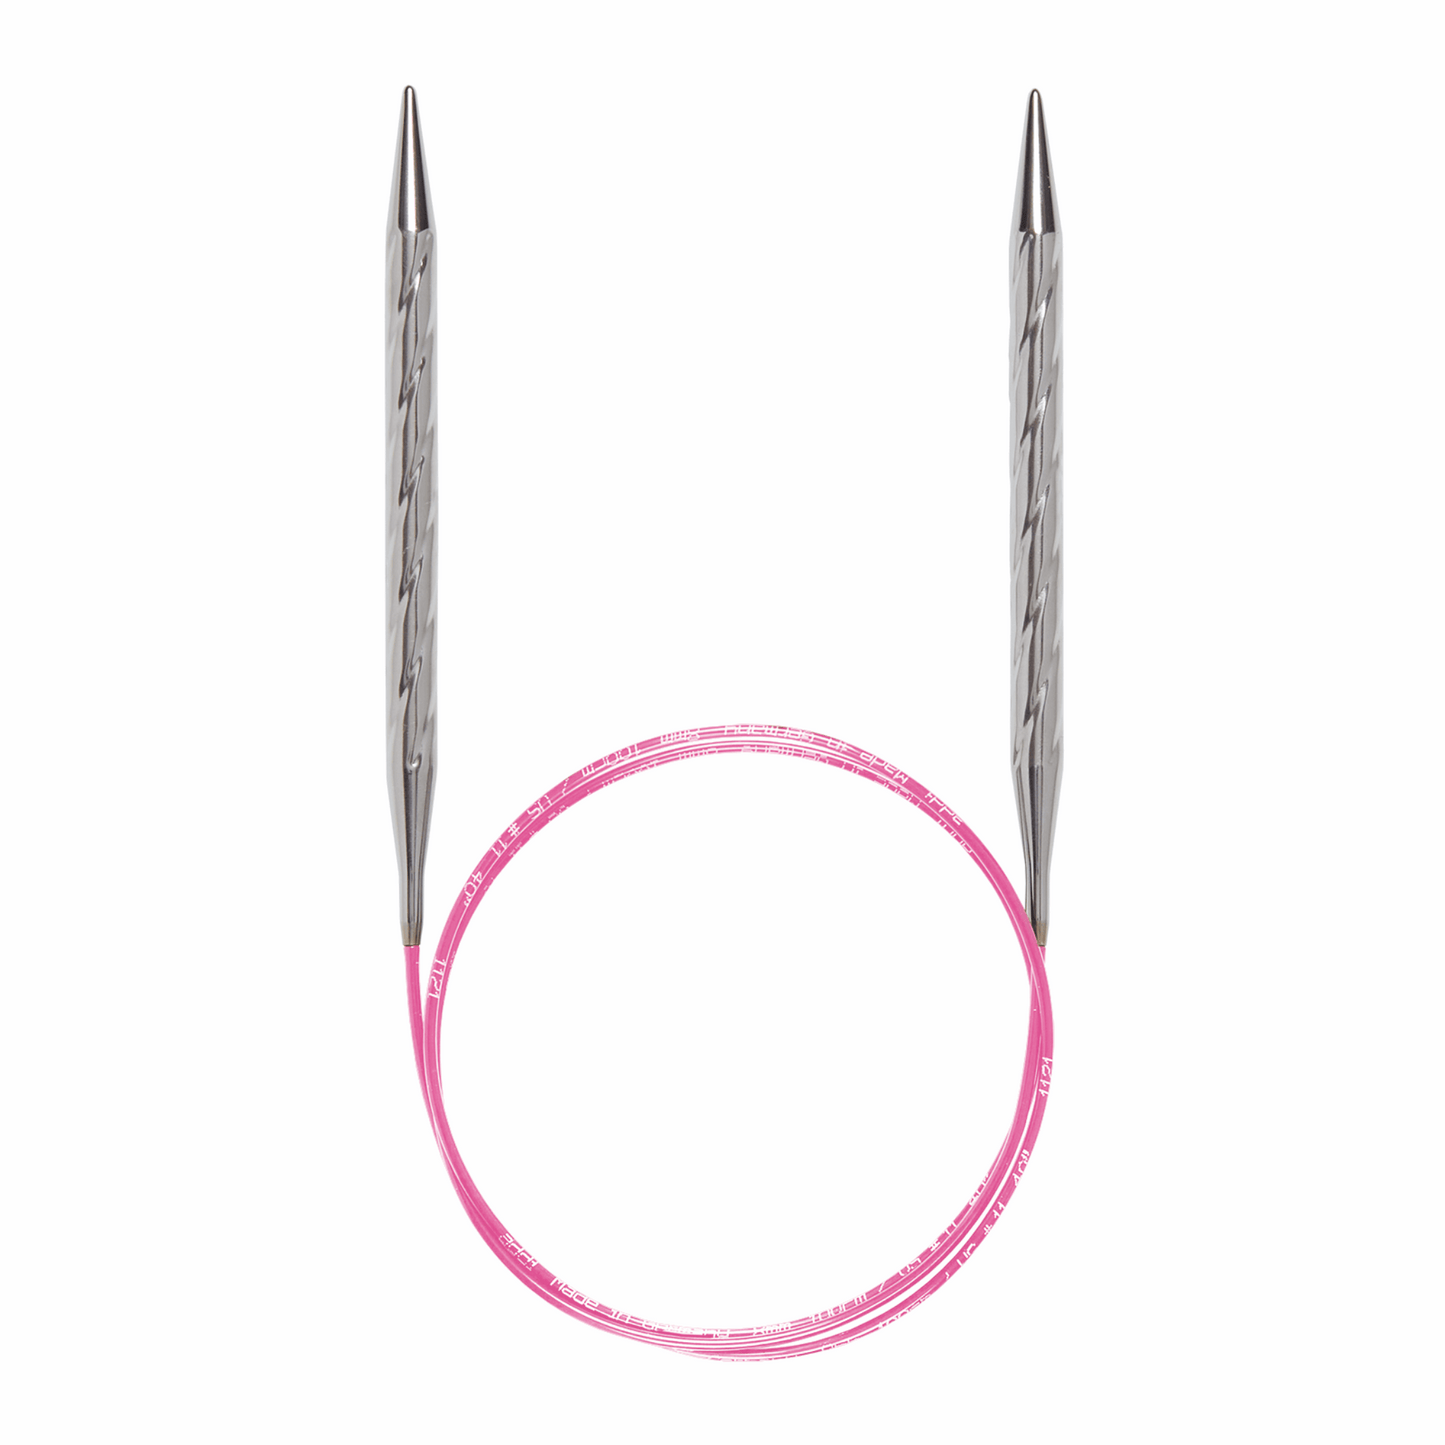 Addi, Unicorn circular knitting needle, 61157, size 3, length 80